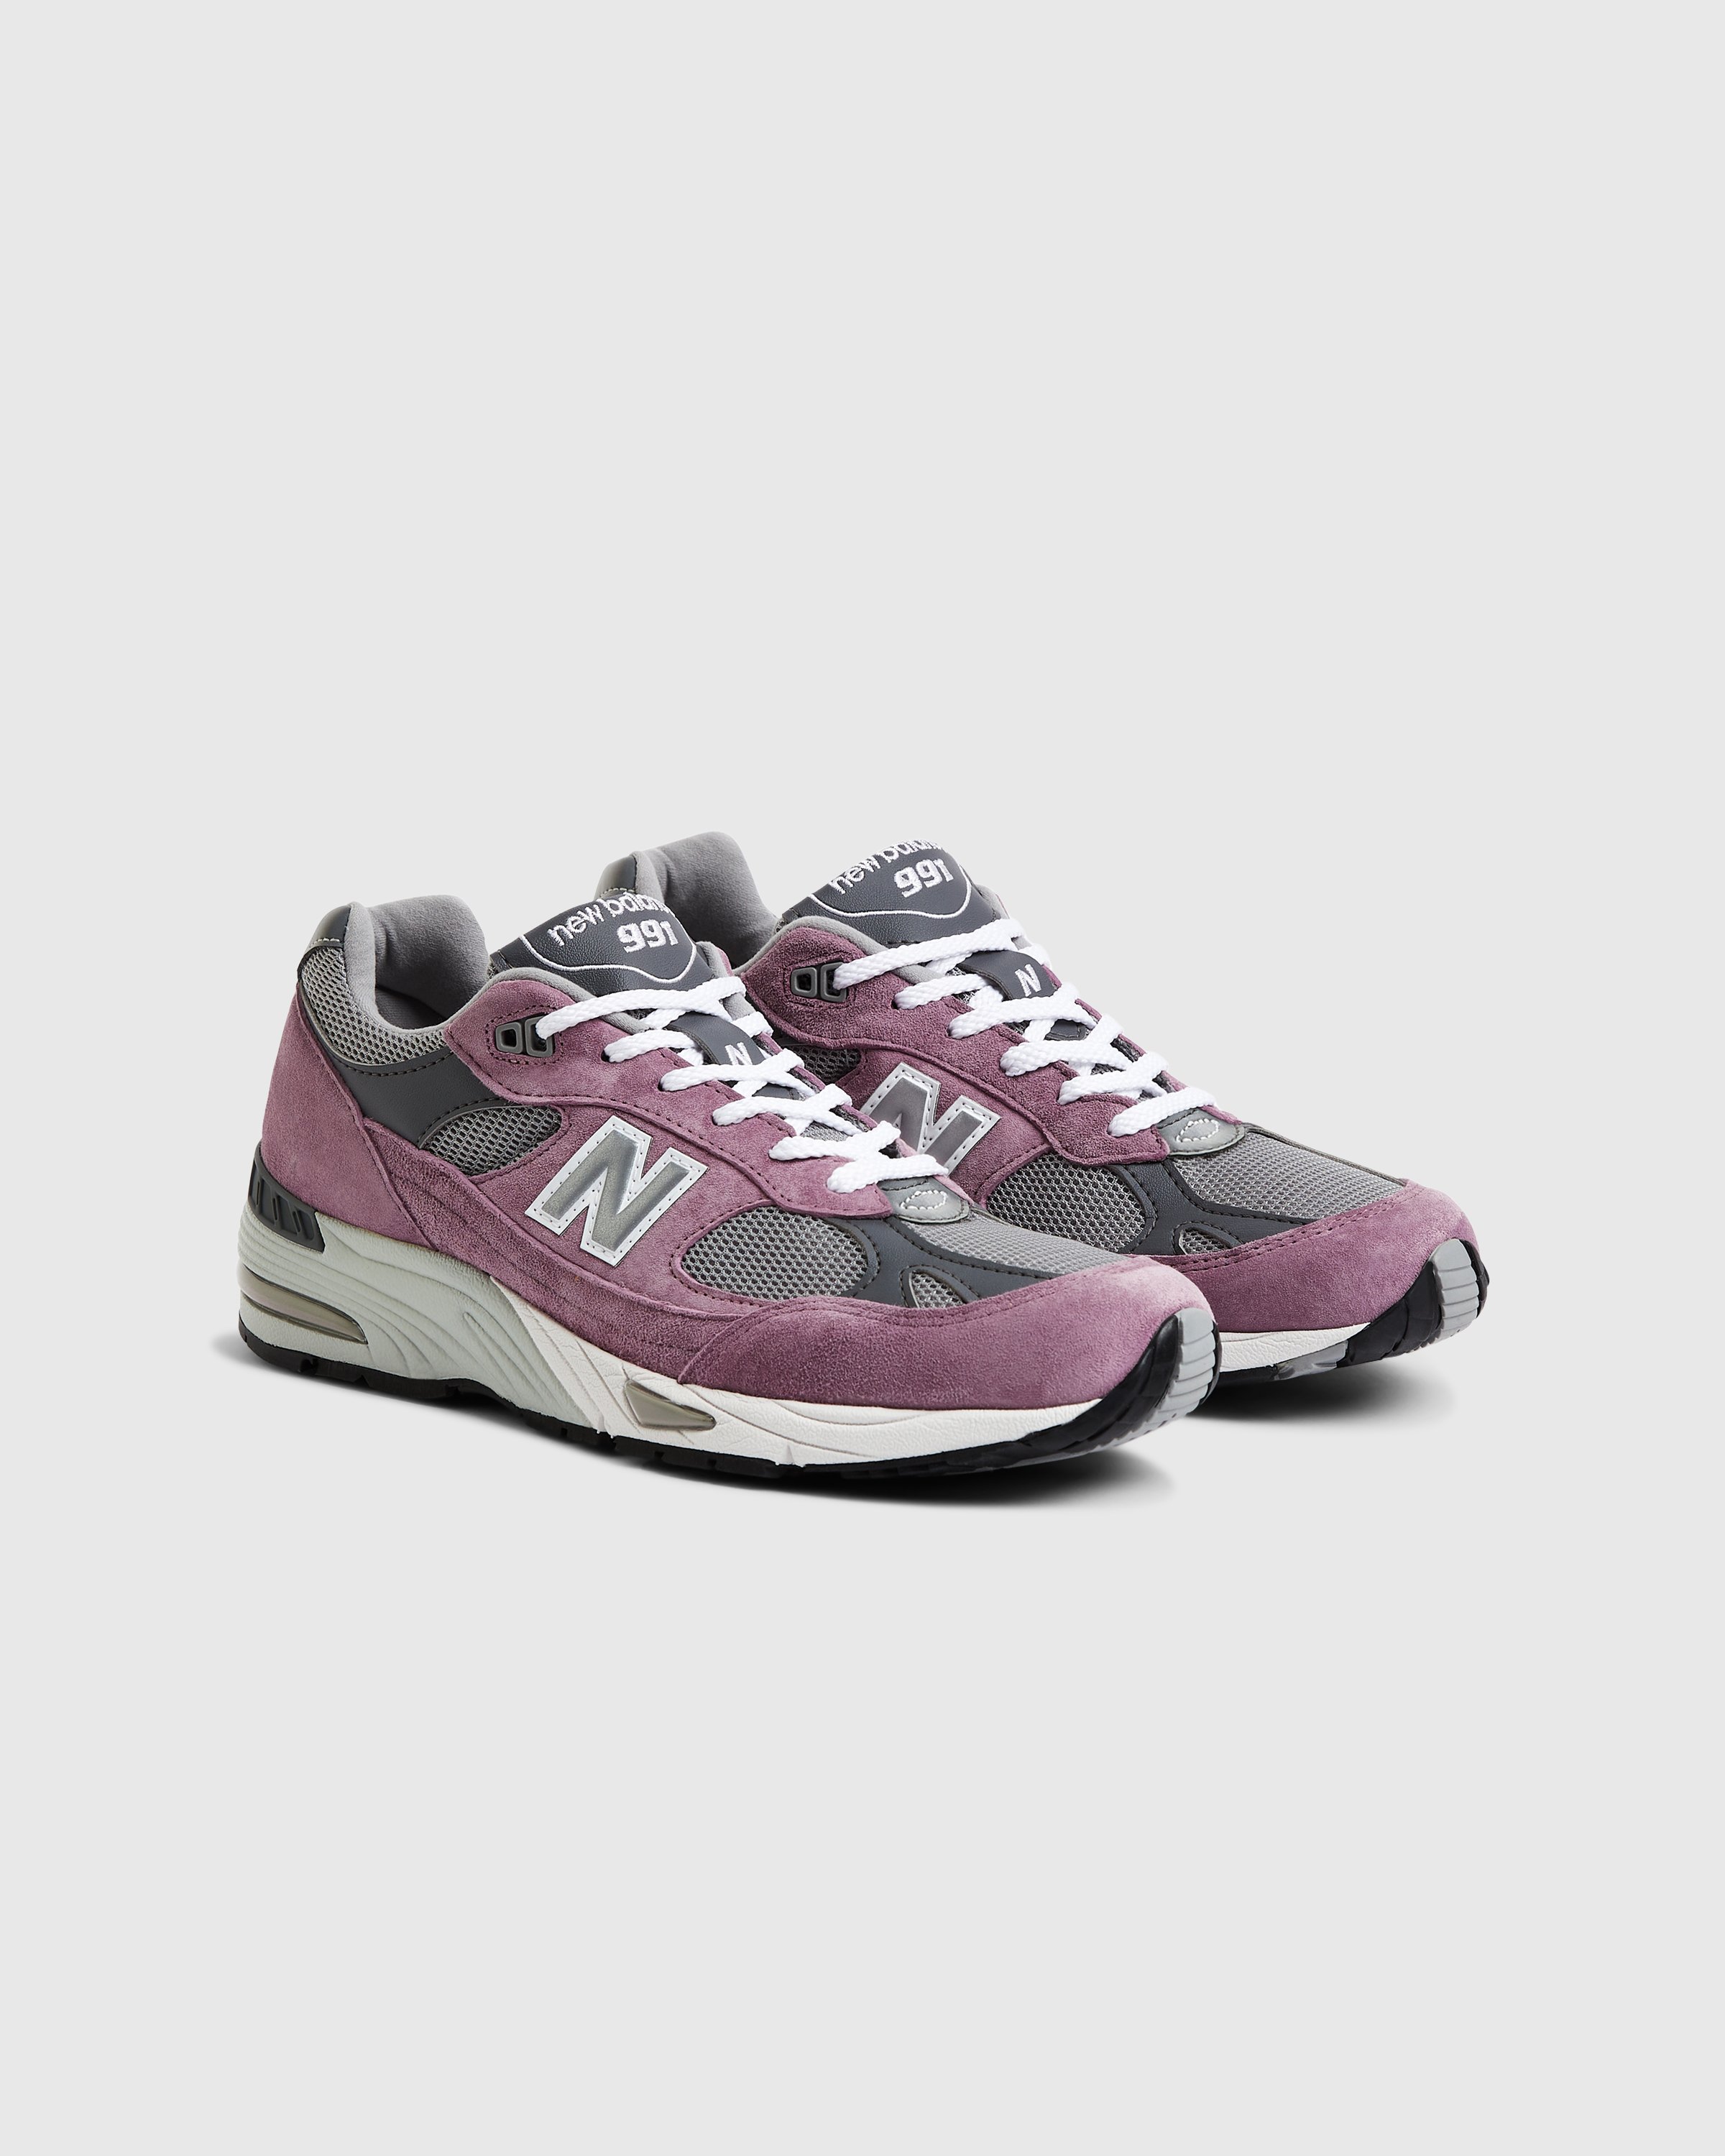 New Balance - M 991 PGG Pink/Grey - Footwear - Pink - Image 3